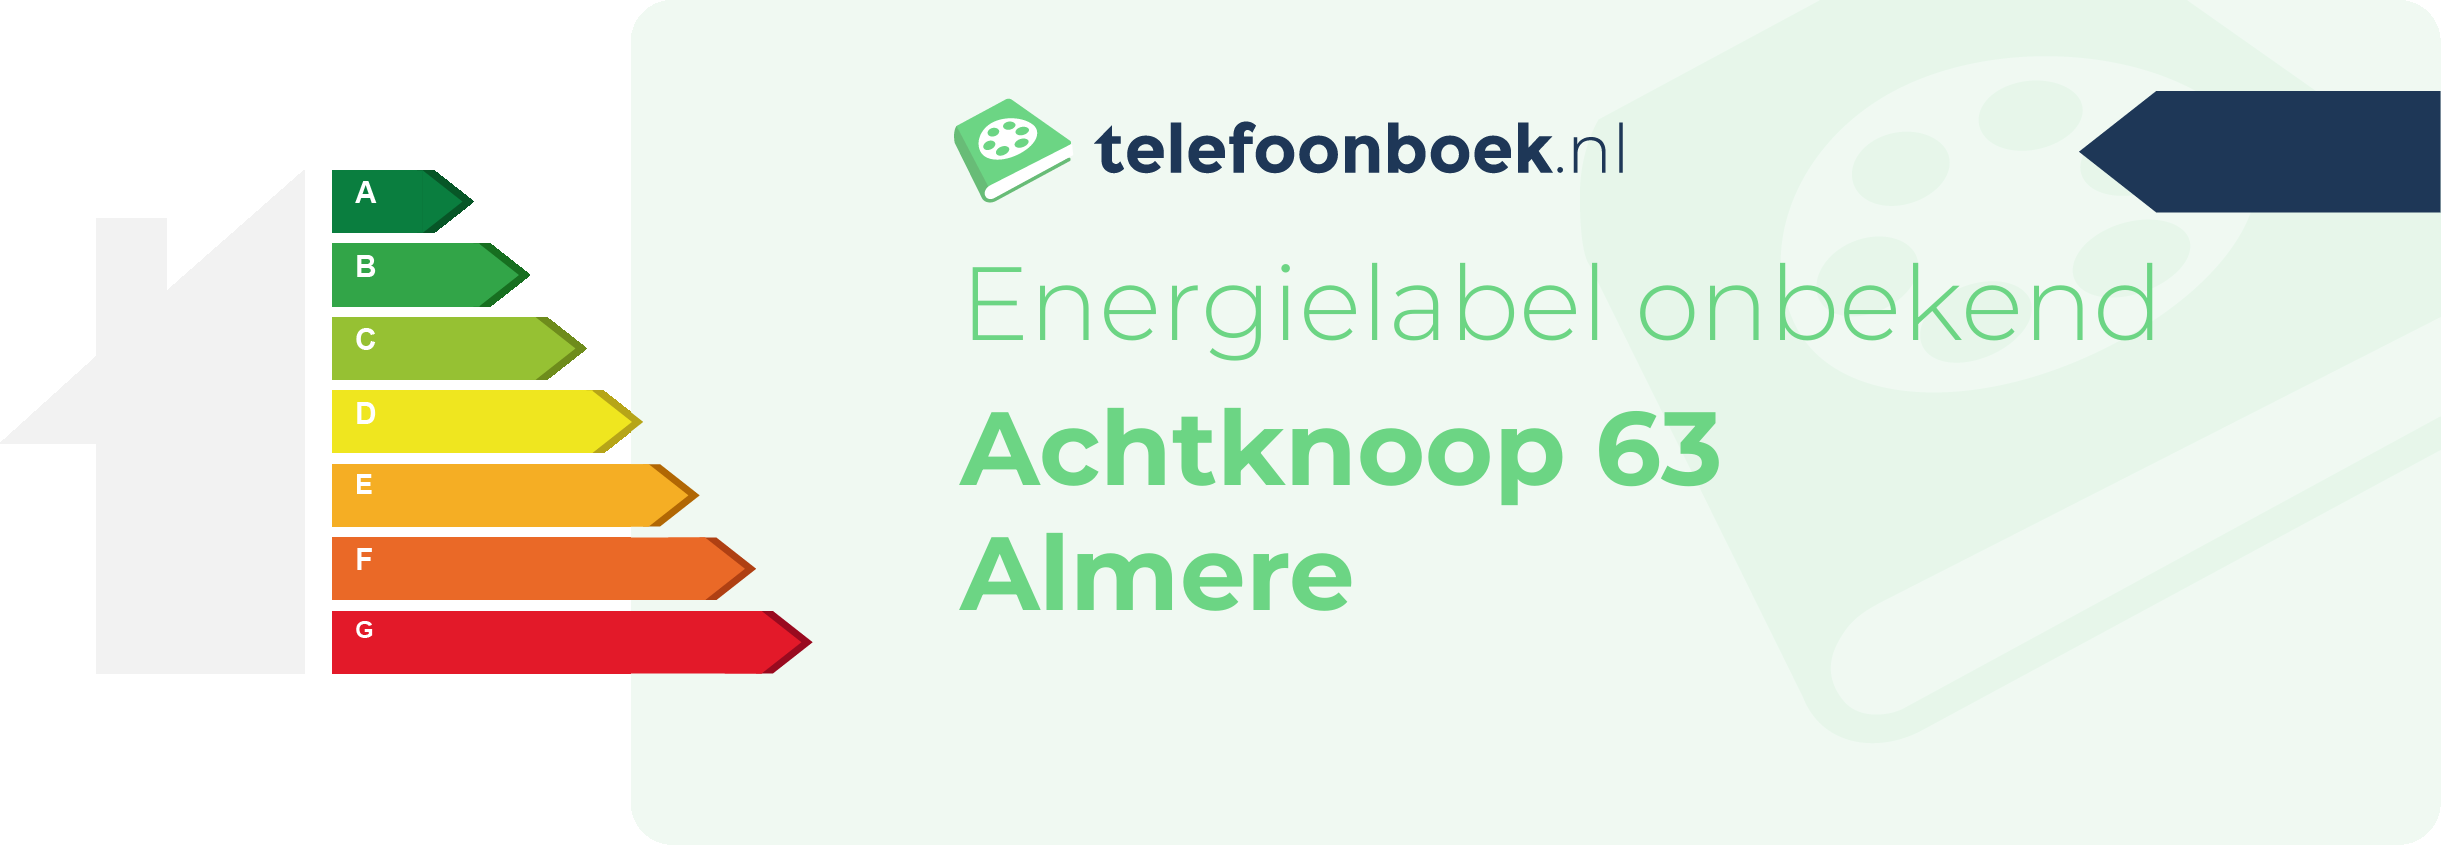 Energielabel Achtknoop 63 Almere